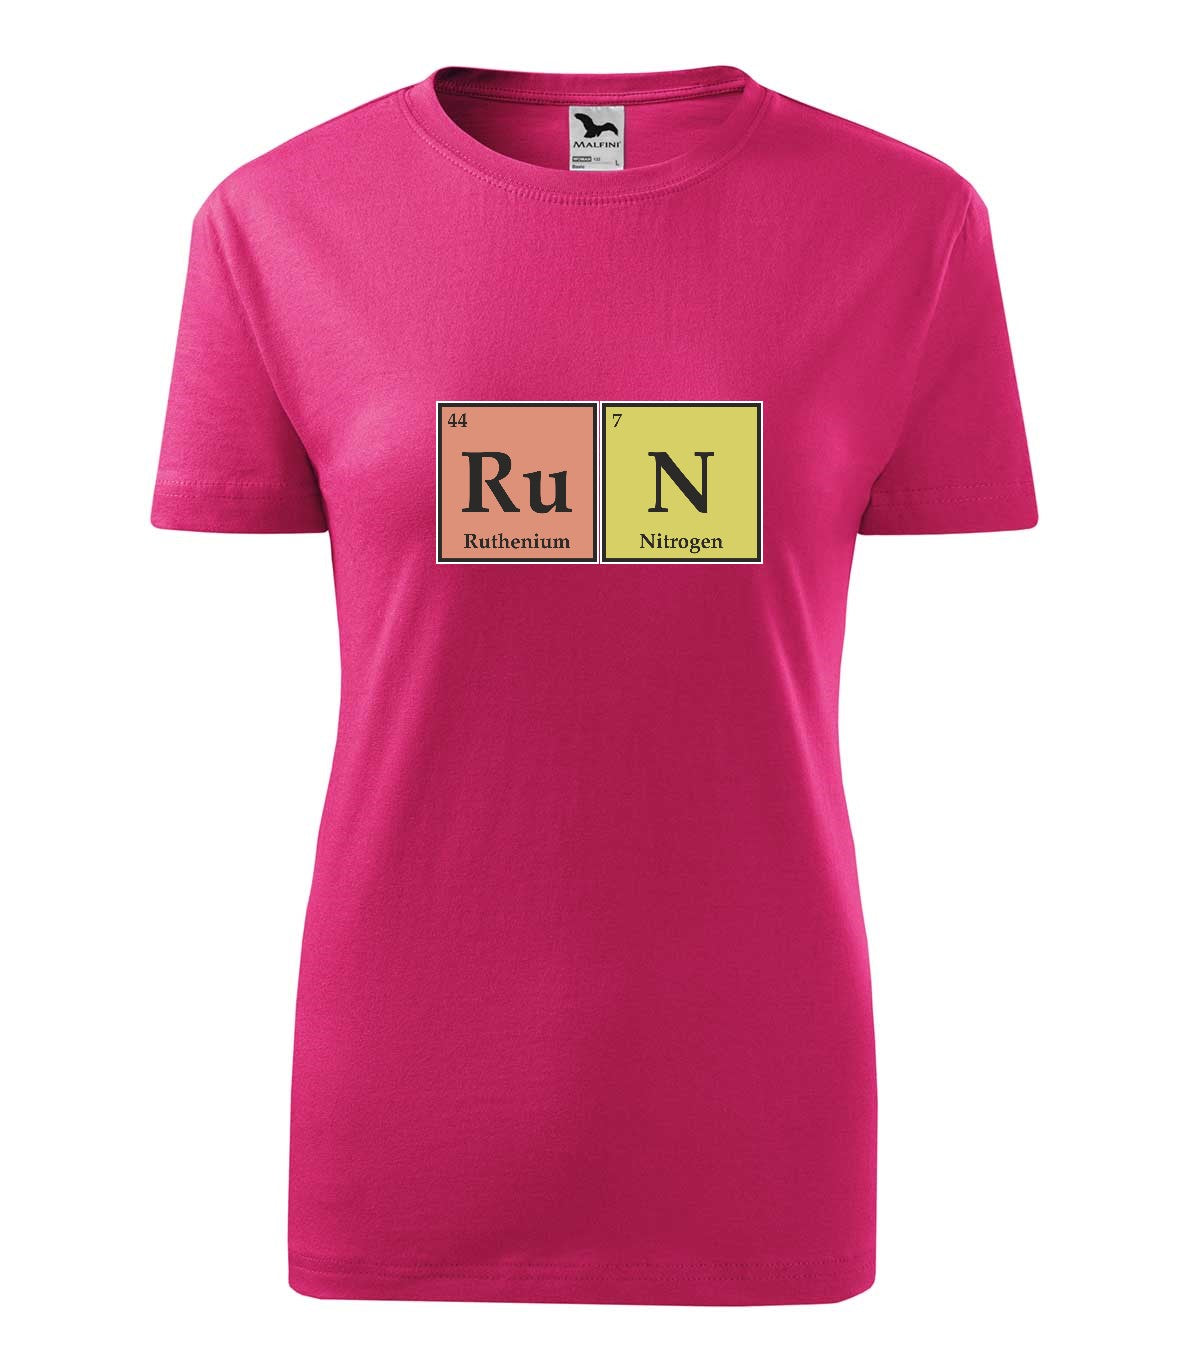 RuN kémia női póló